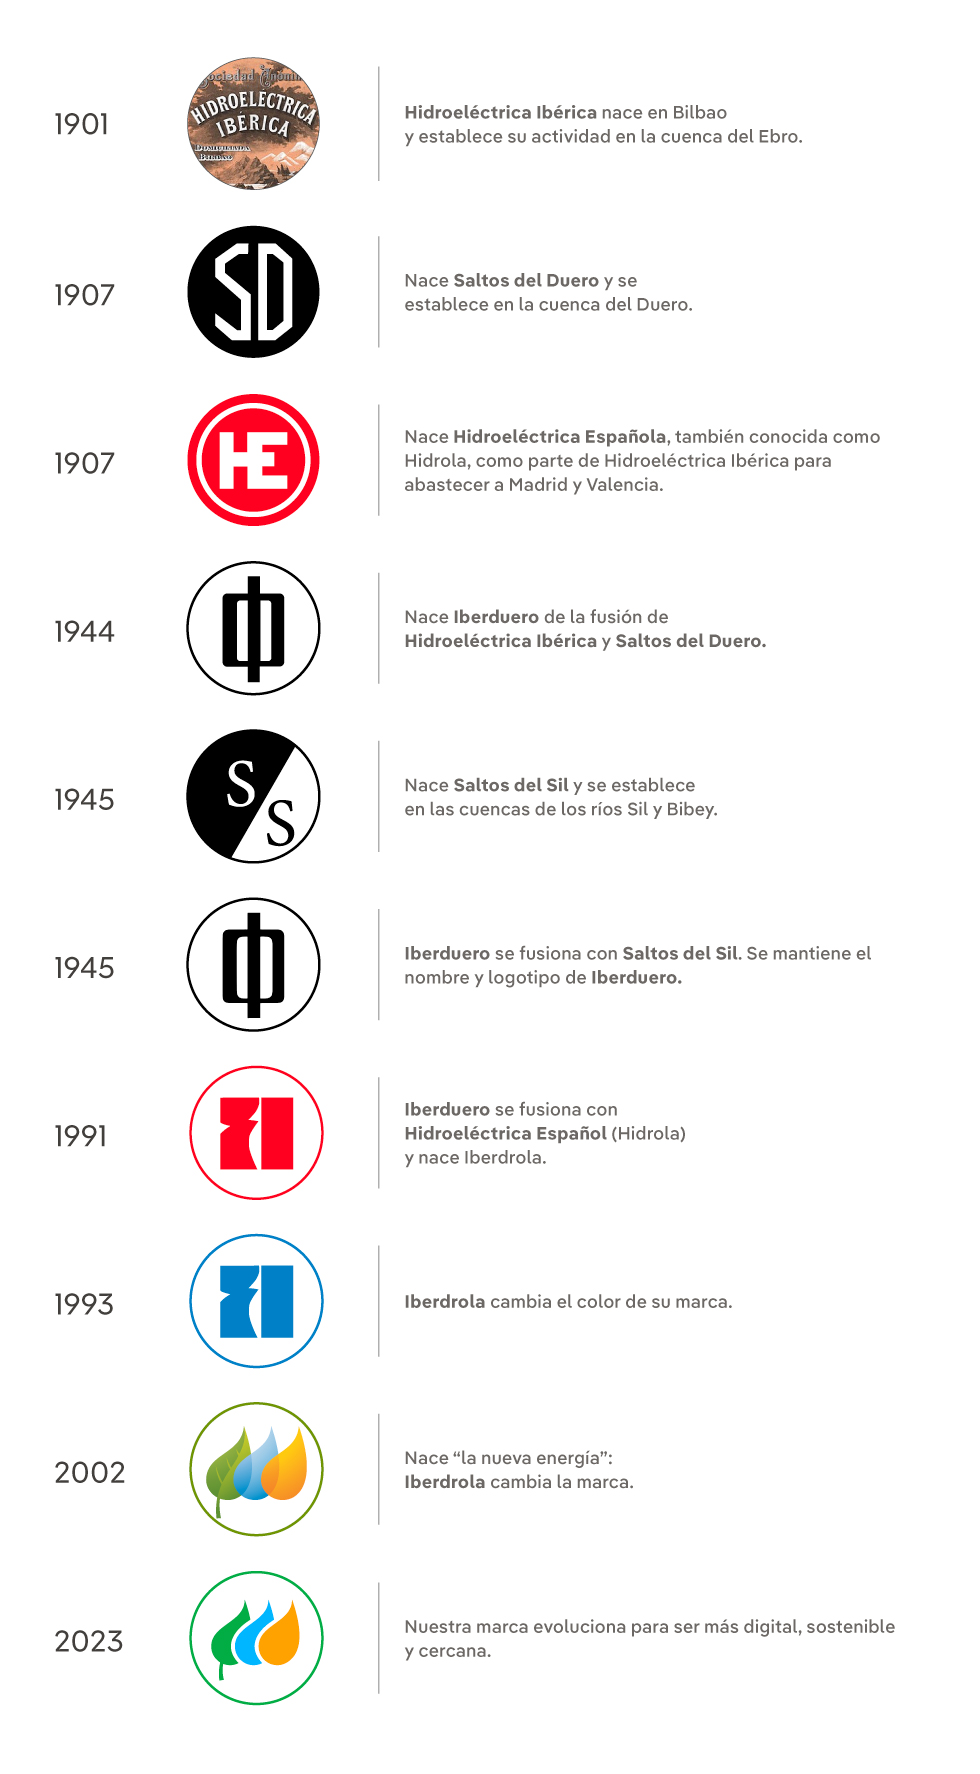 Evolución de la marca Iberdrola